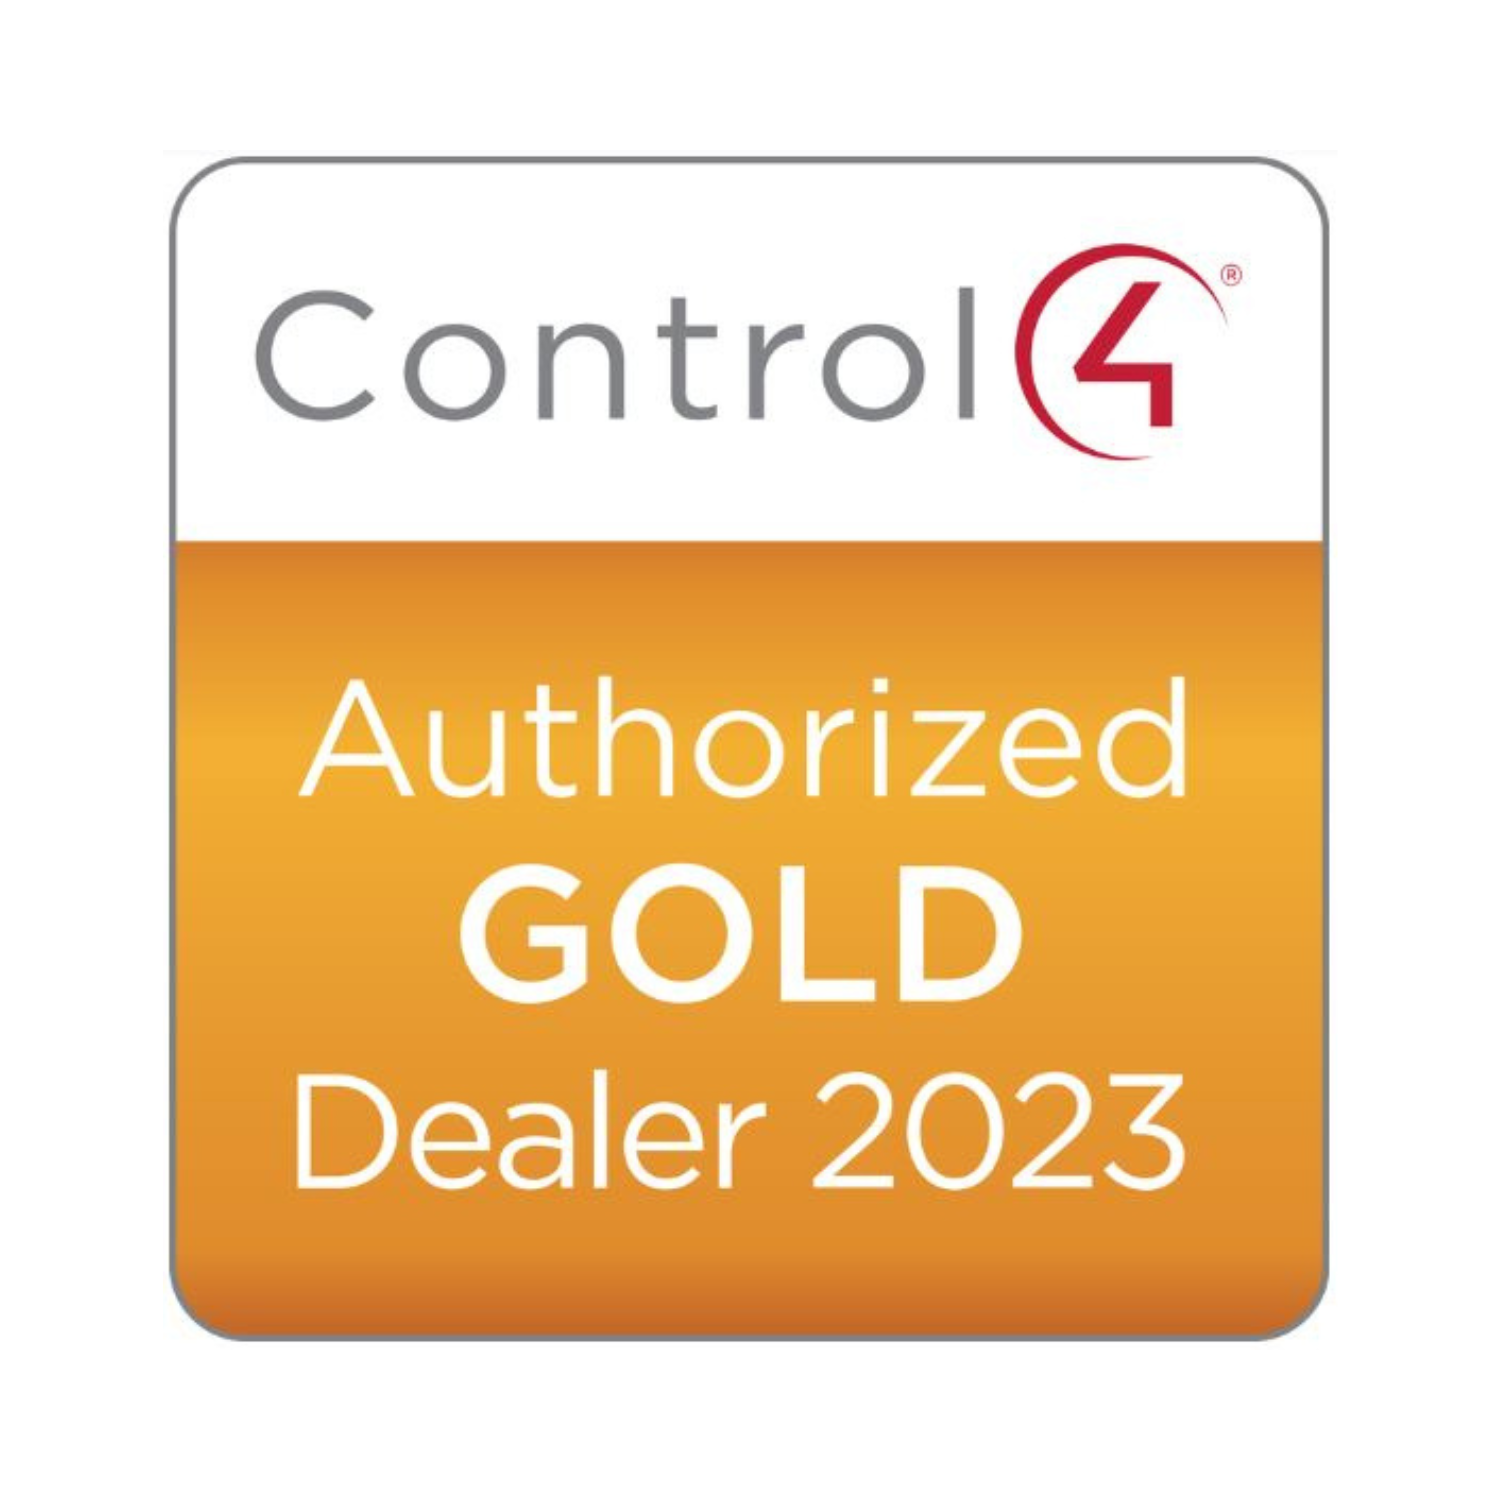 Control4 Gold Dealer Badge for 2023